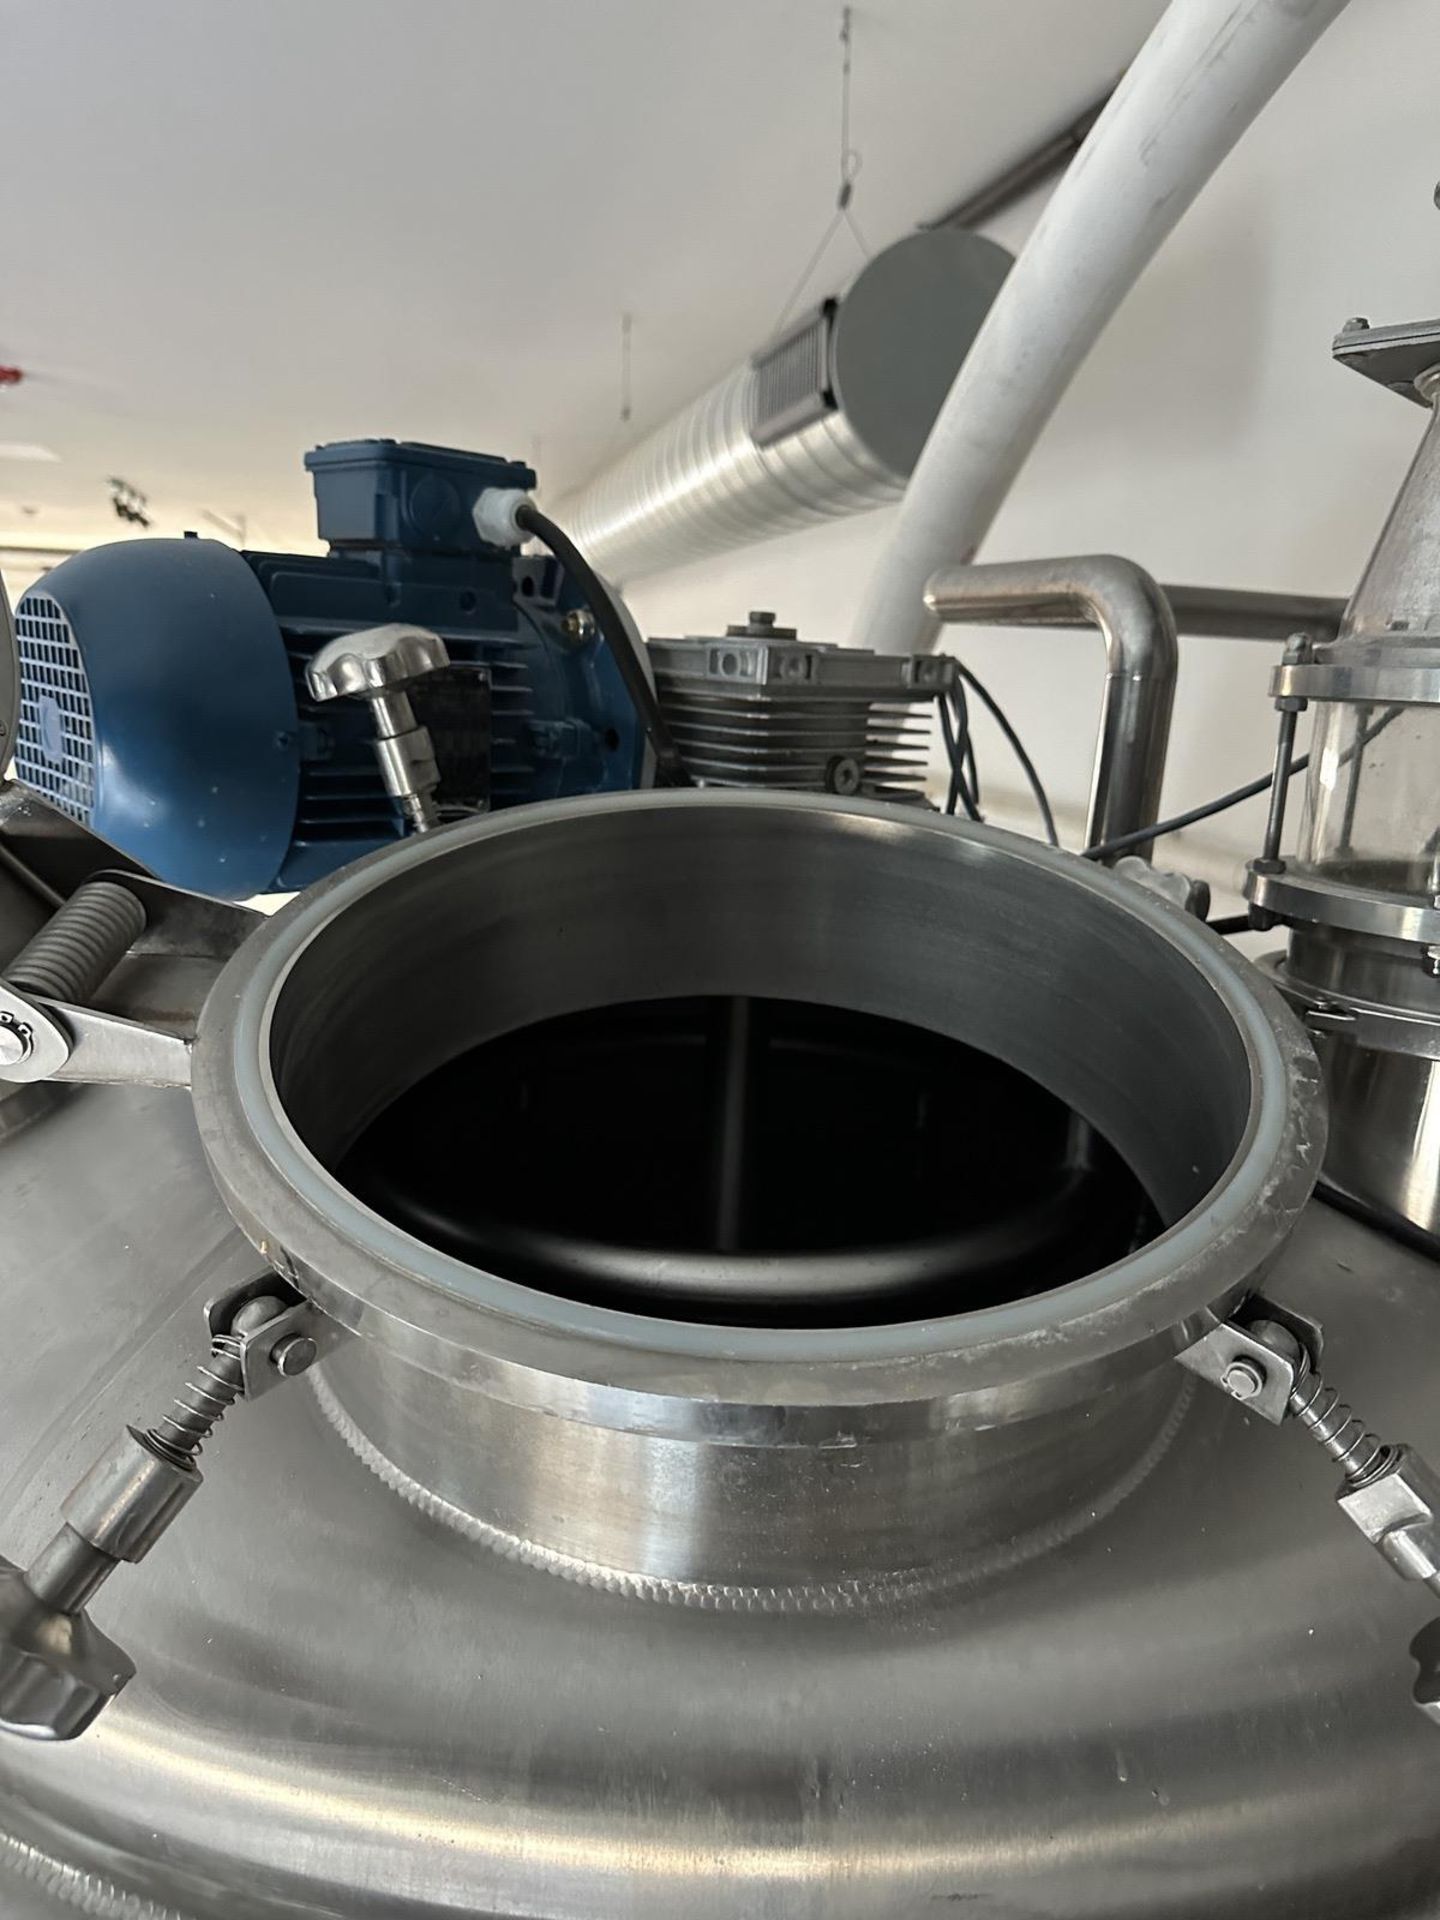 2019 Standard Kegs LLC 5 BBL 2 Vessel Brewhouse Including Pump, Mash/Lauter + HLT V | Rig Fee $3000 - Image 9 of 18